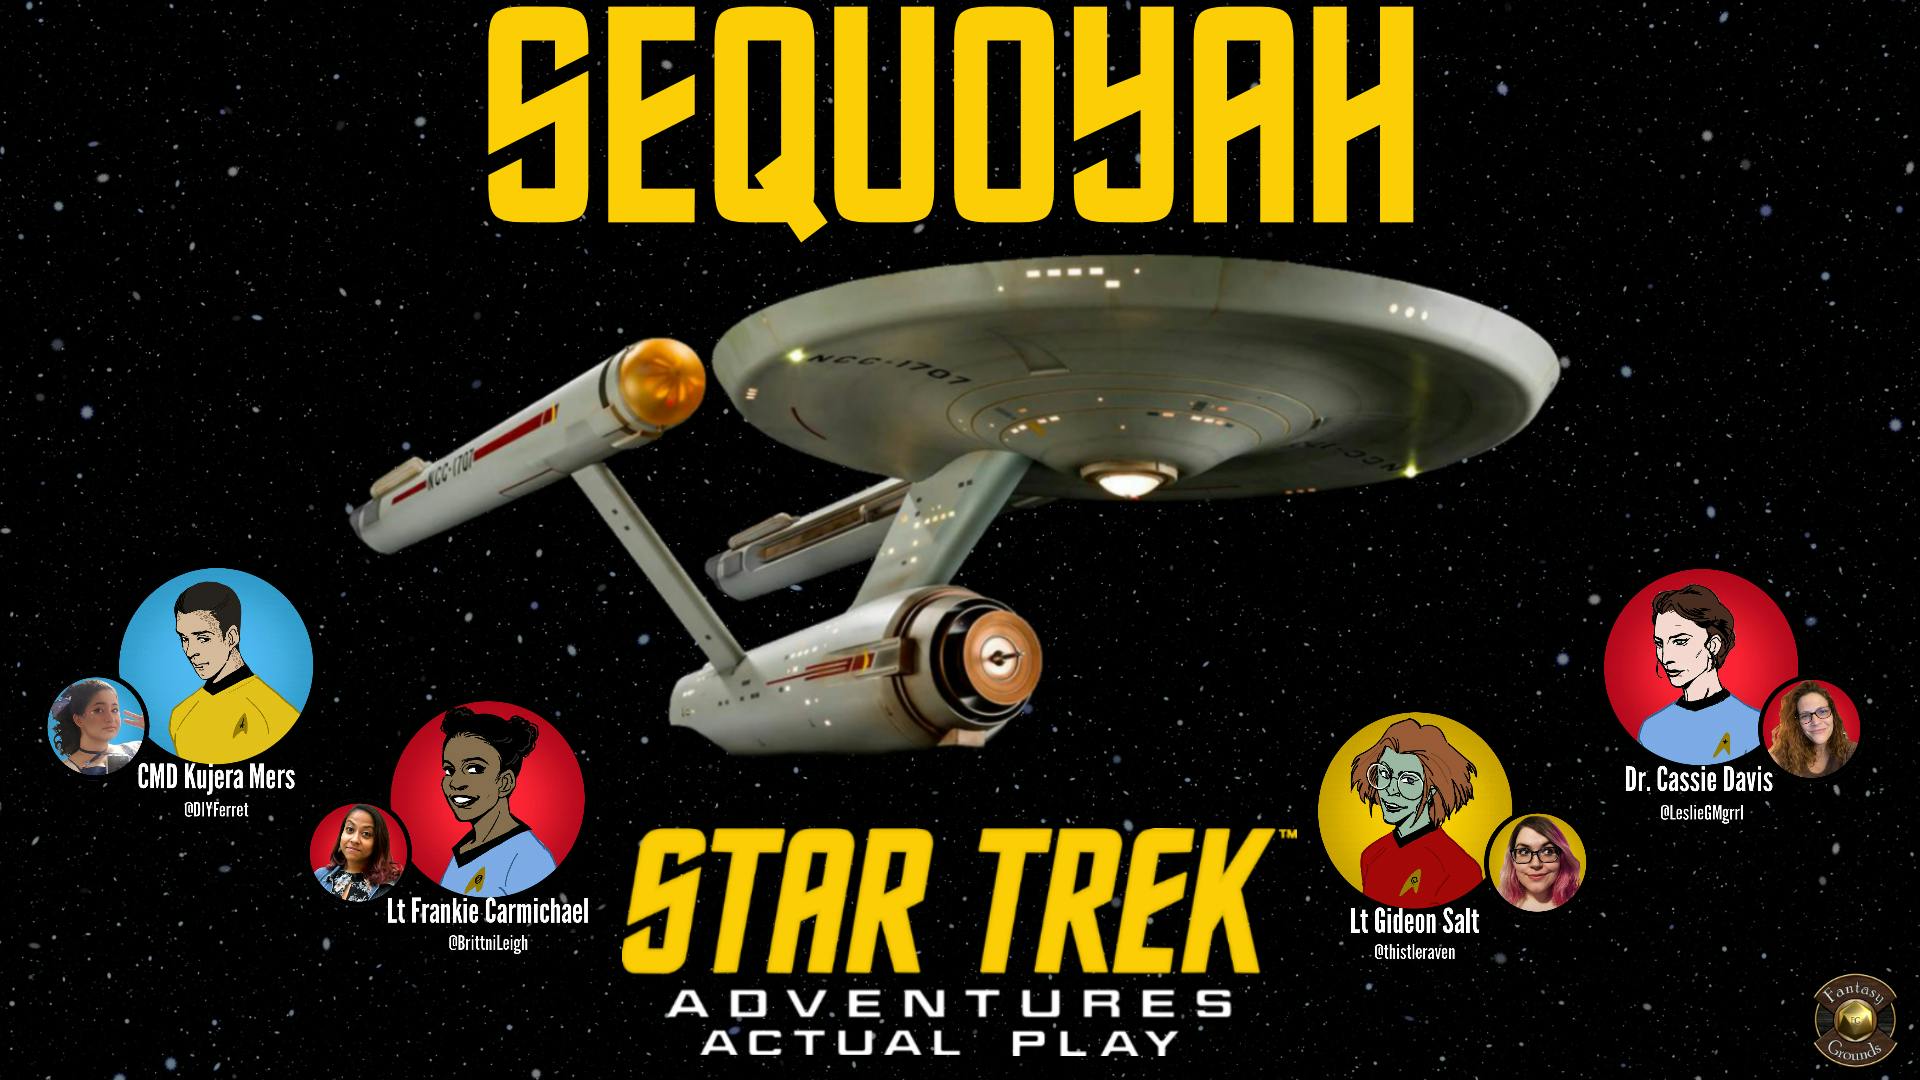 Star Trek Adventures: Sequoyah 